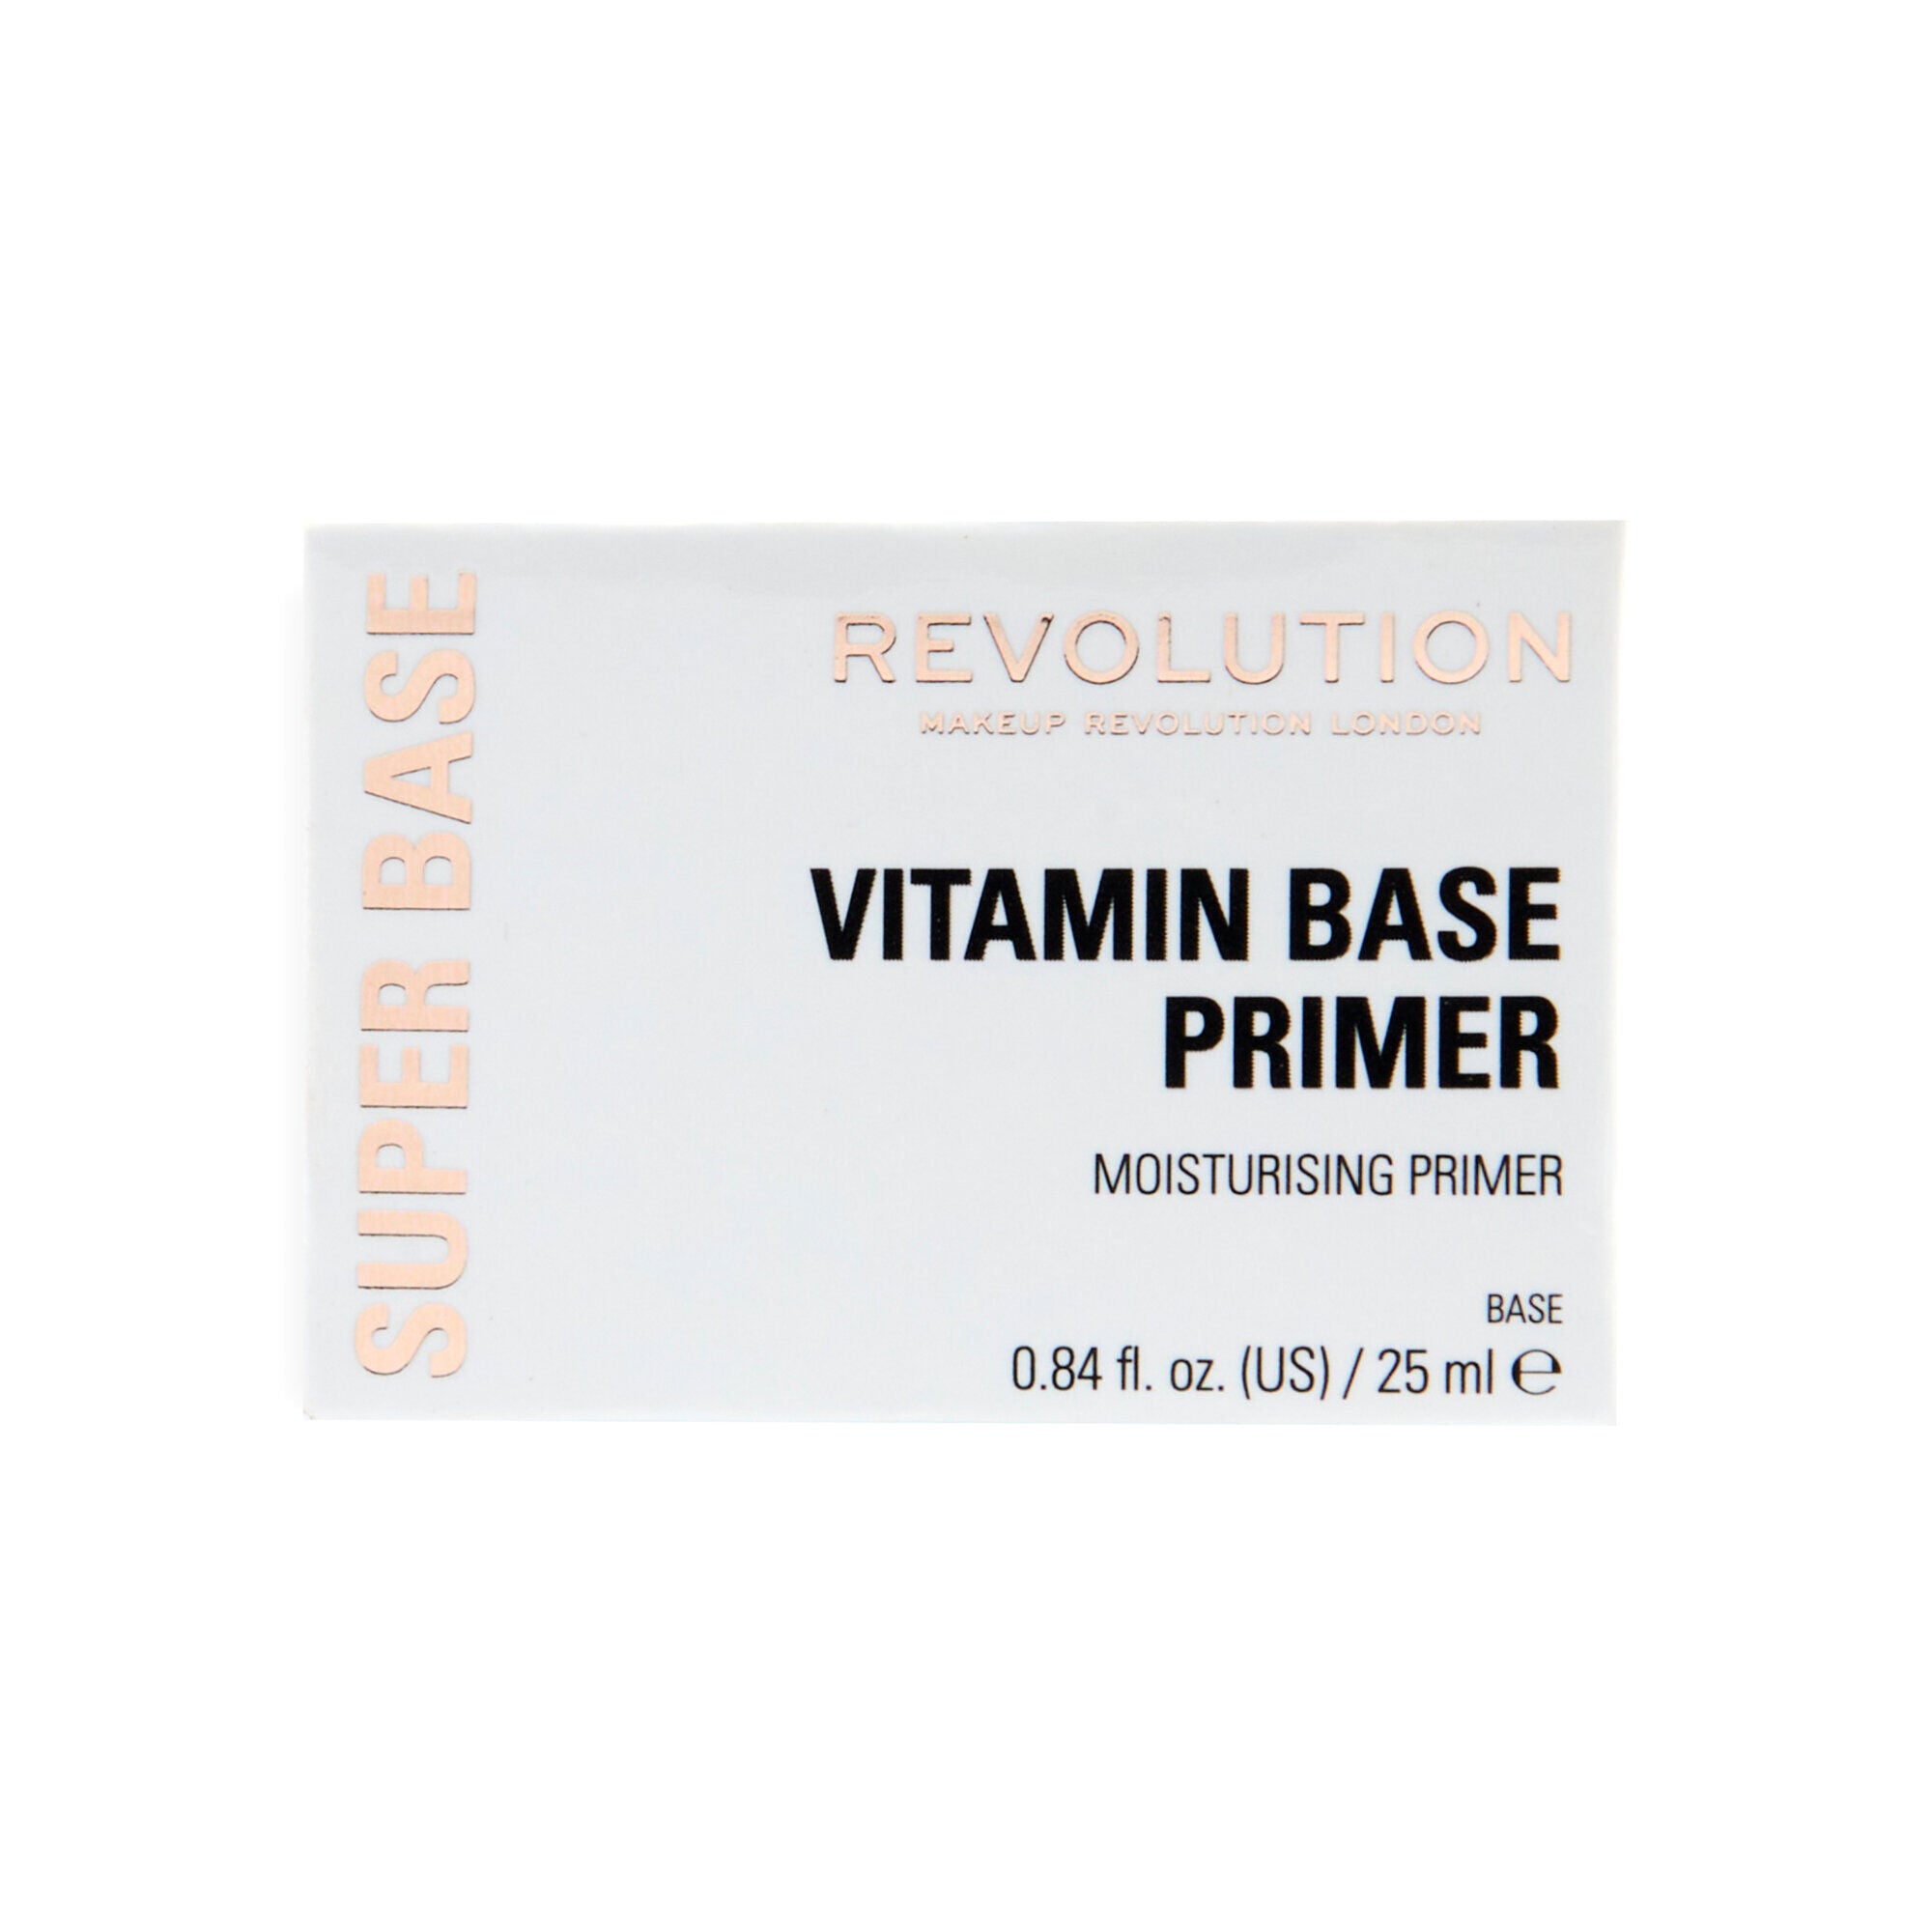 Revolution Super Base Vitamin Primer